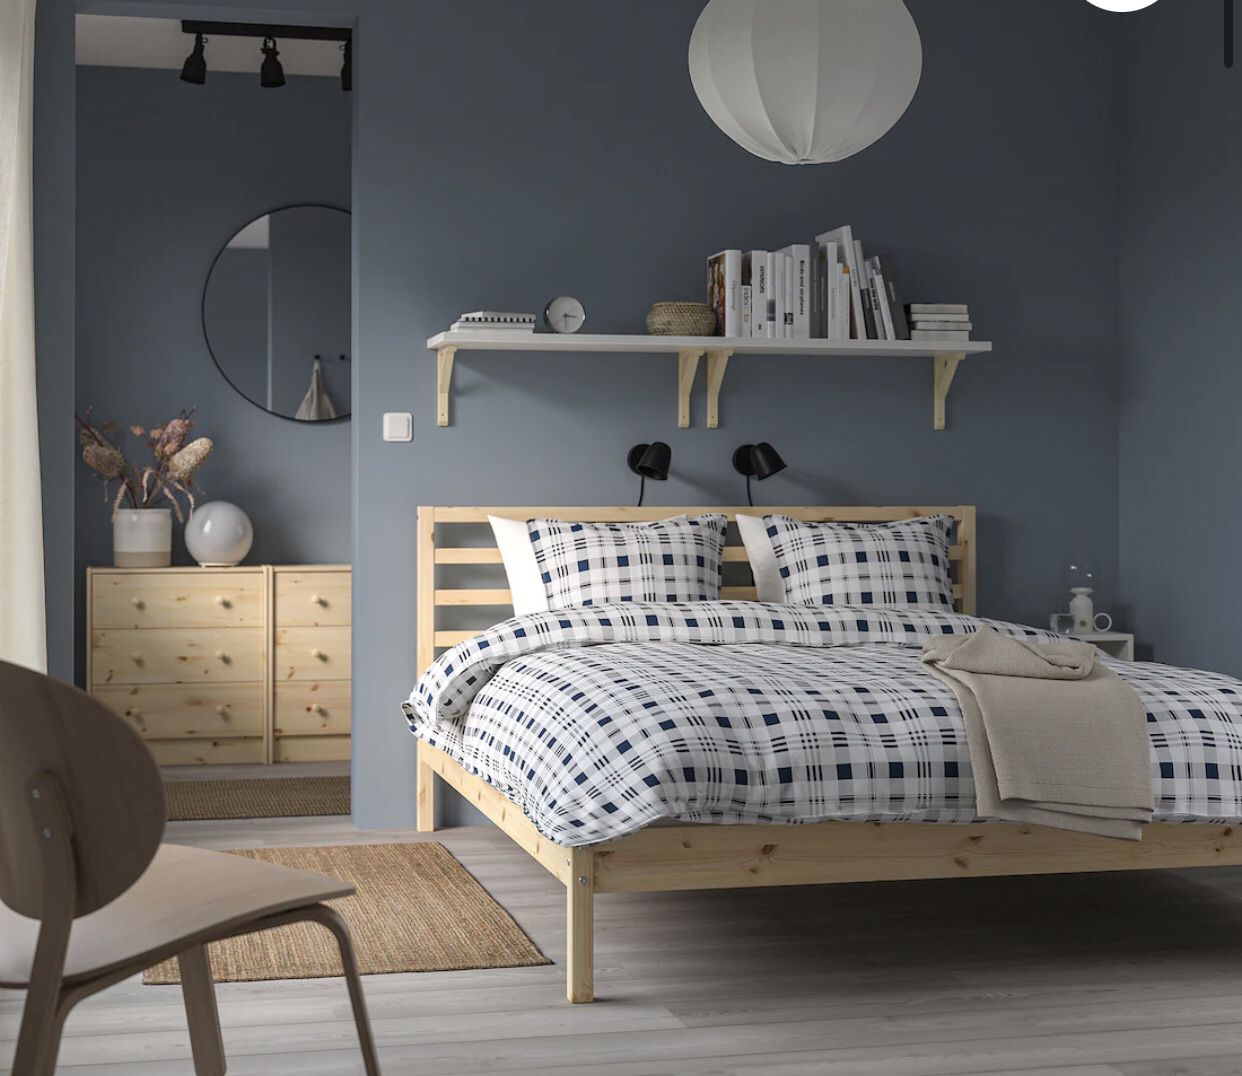 Ikea TARVA Bed Frame - Queen, Tan